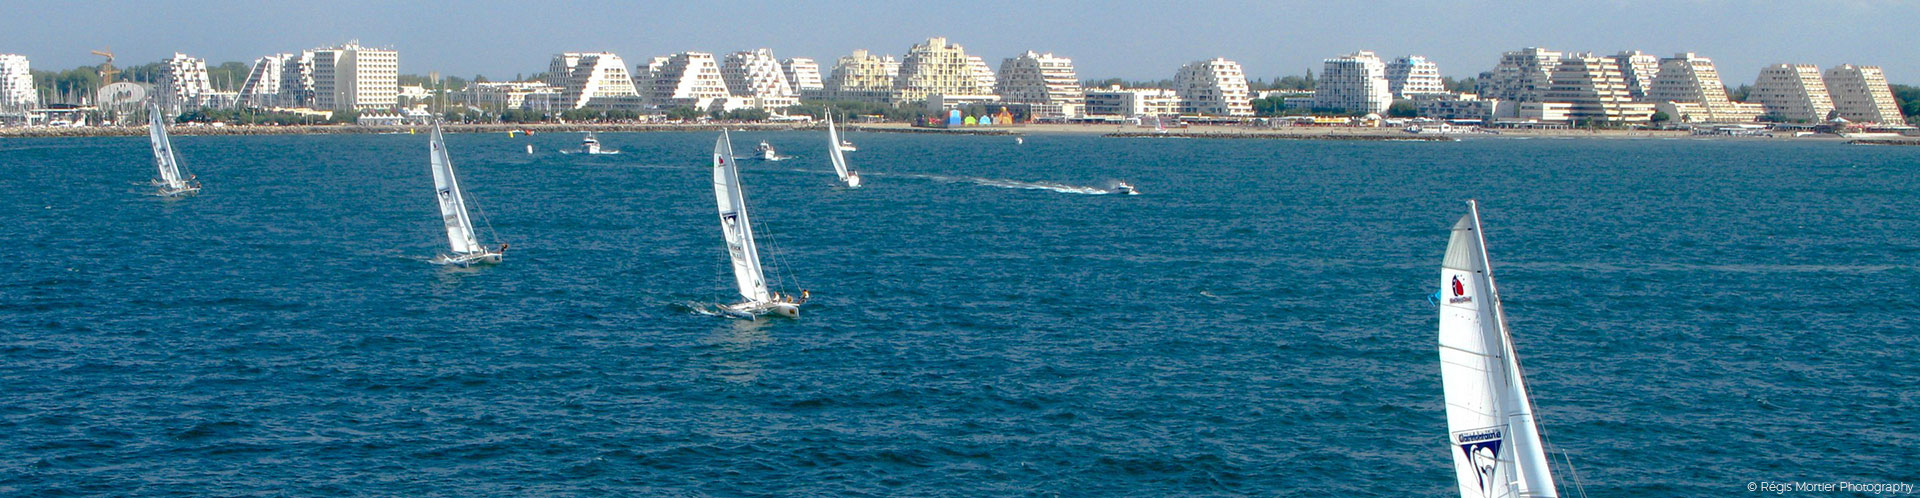 Segelboote auf dem Mittelmeer mit Blick auf die Grande-Motte-Gebäude